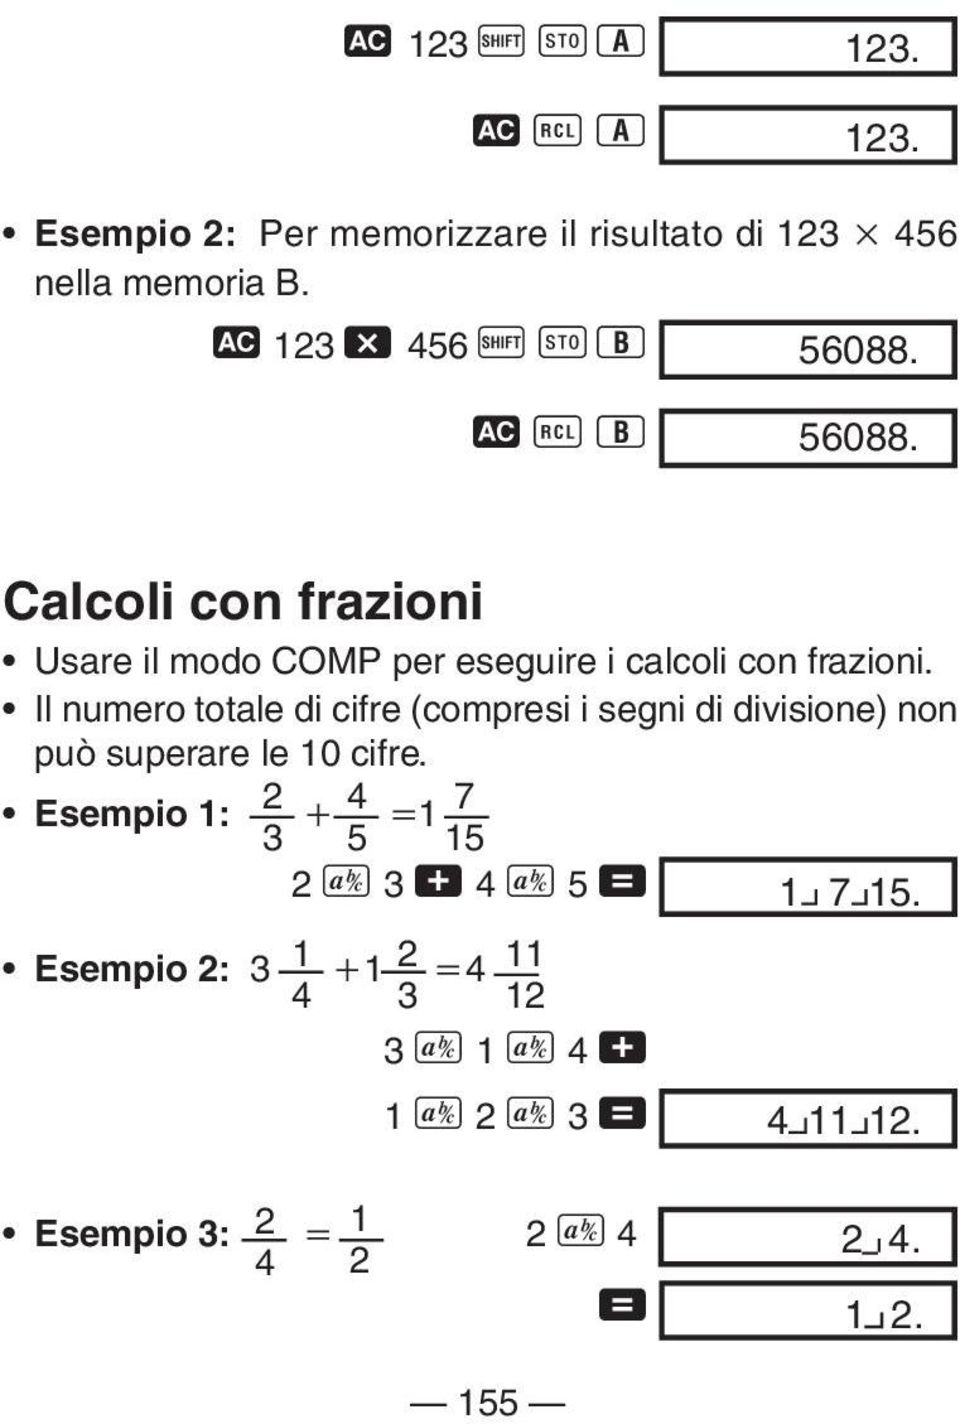 Il numero totale di cifre (compresi i segni di divisione) non può superare le 10 cifre.